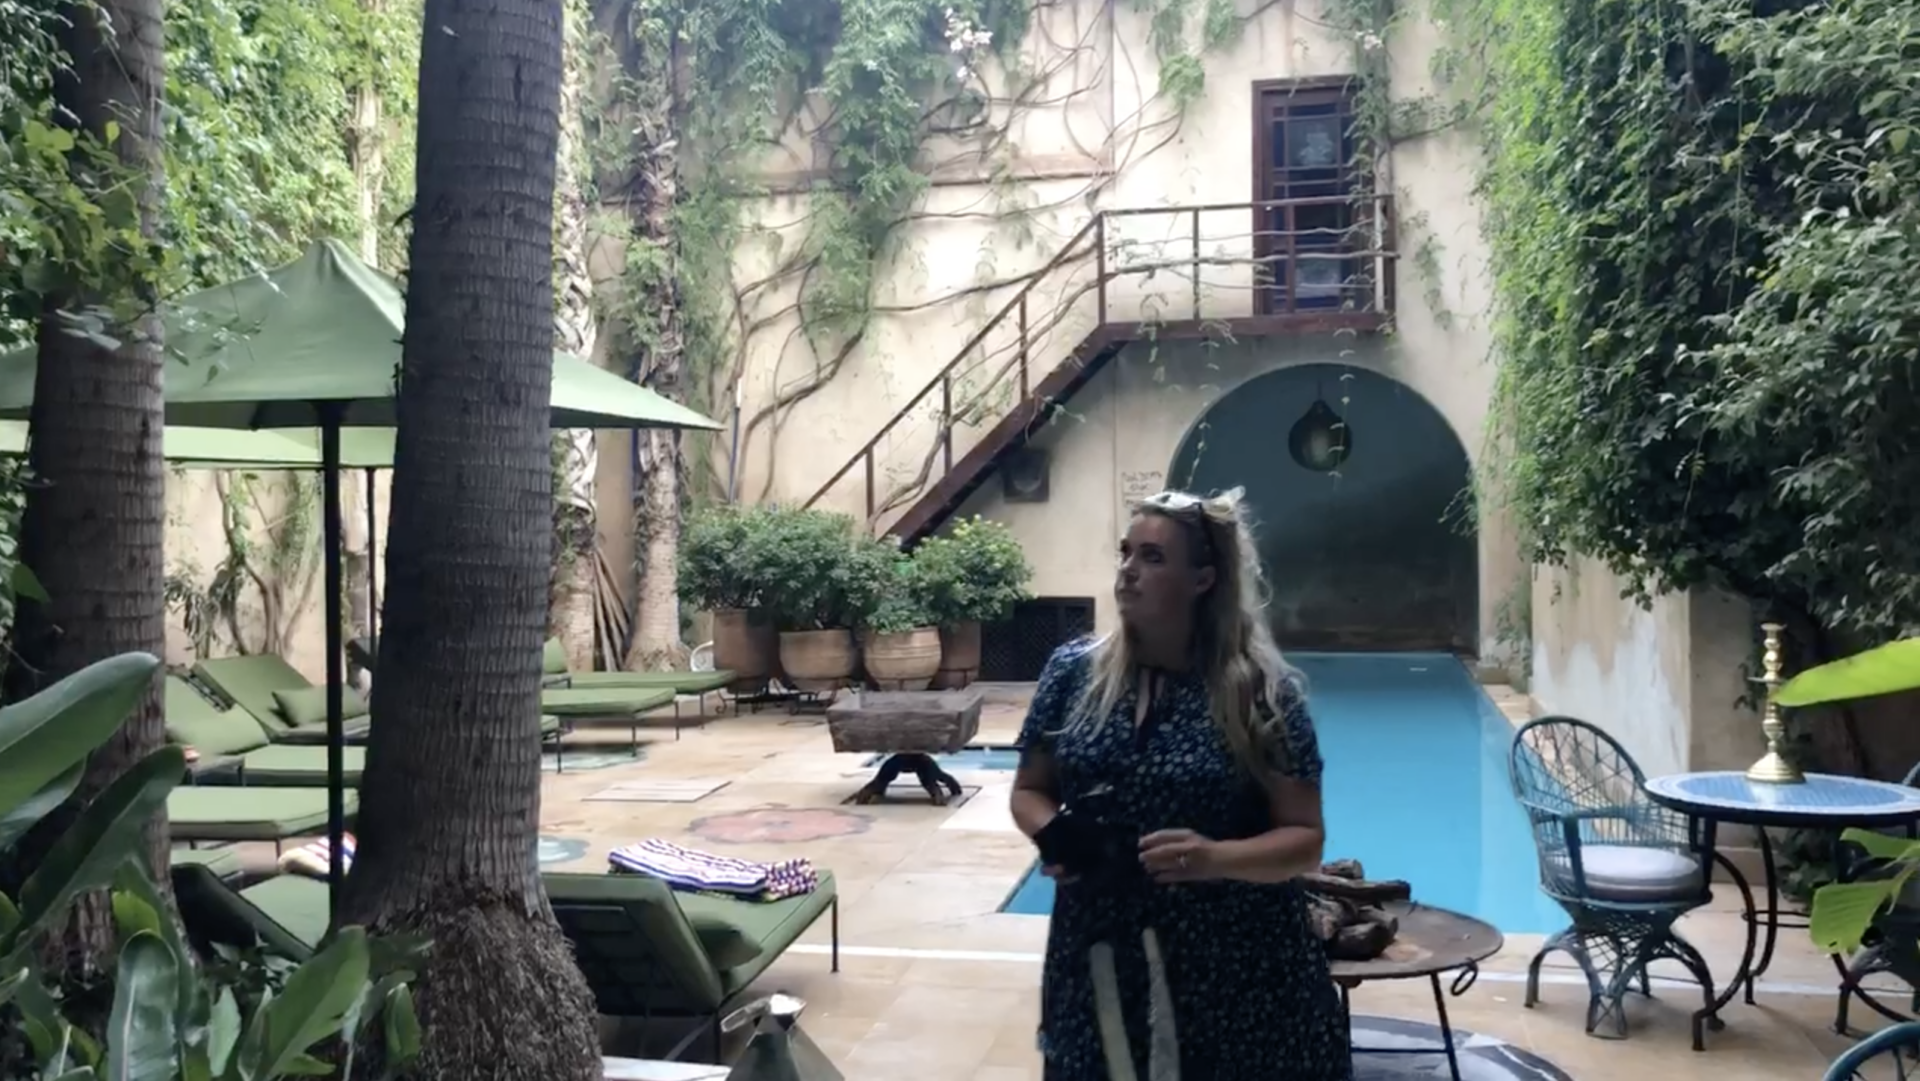 Schermafbeelding 2018 10 26 om 11.46.41 Vlog 4: Sanne van &Stijl gaat op reis naar Marrakech